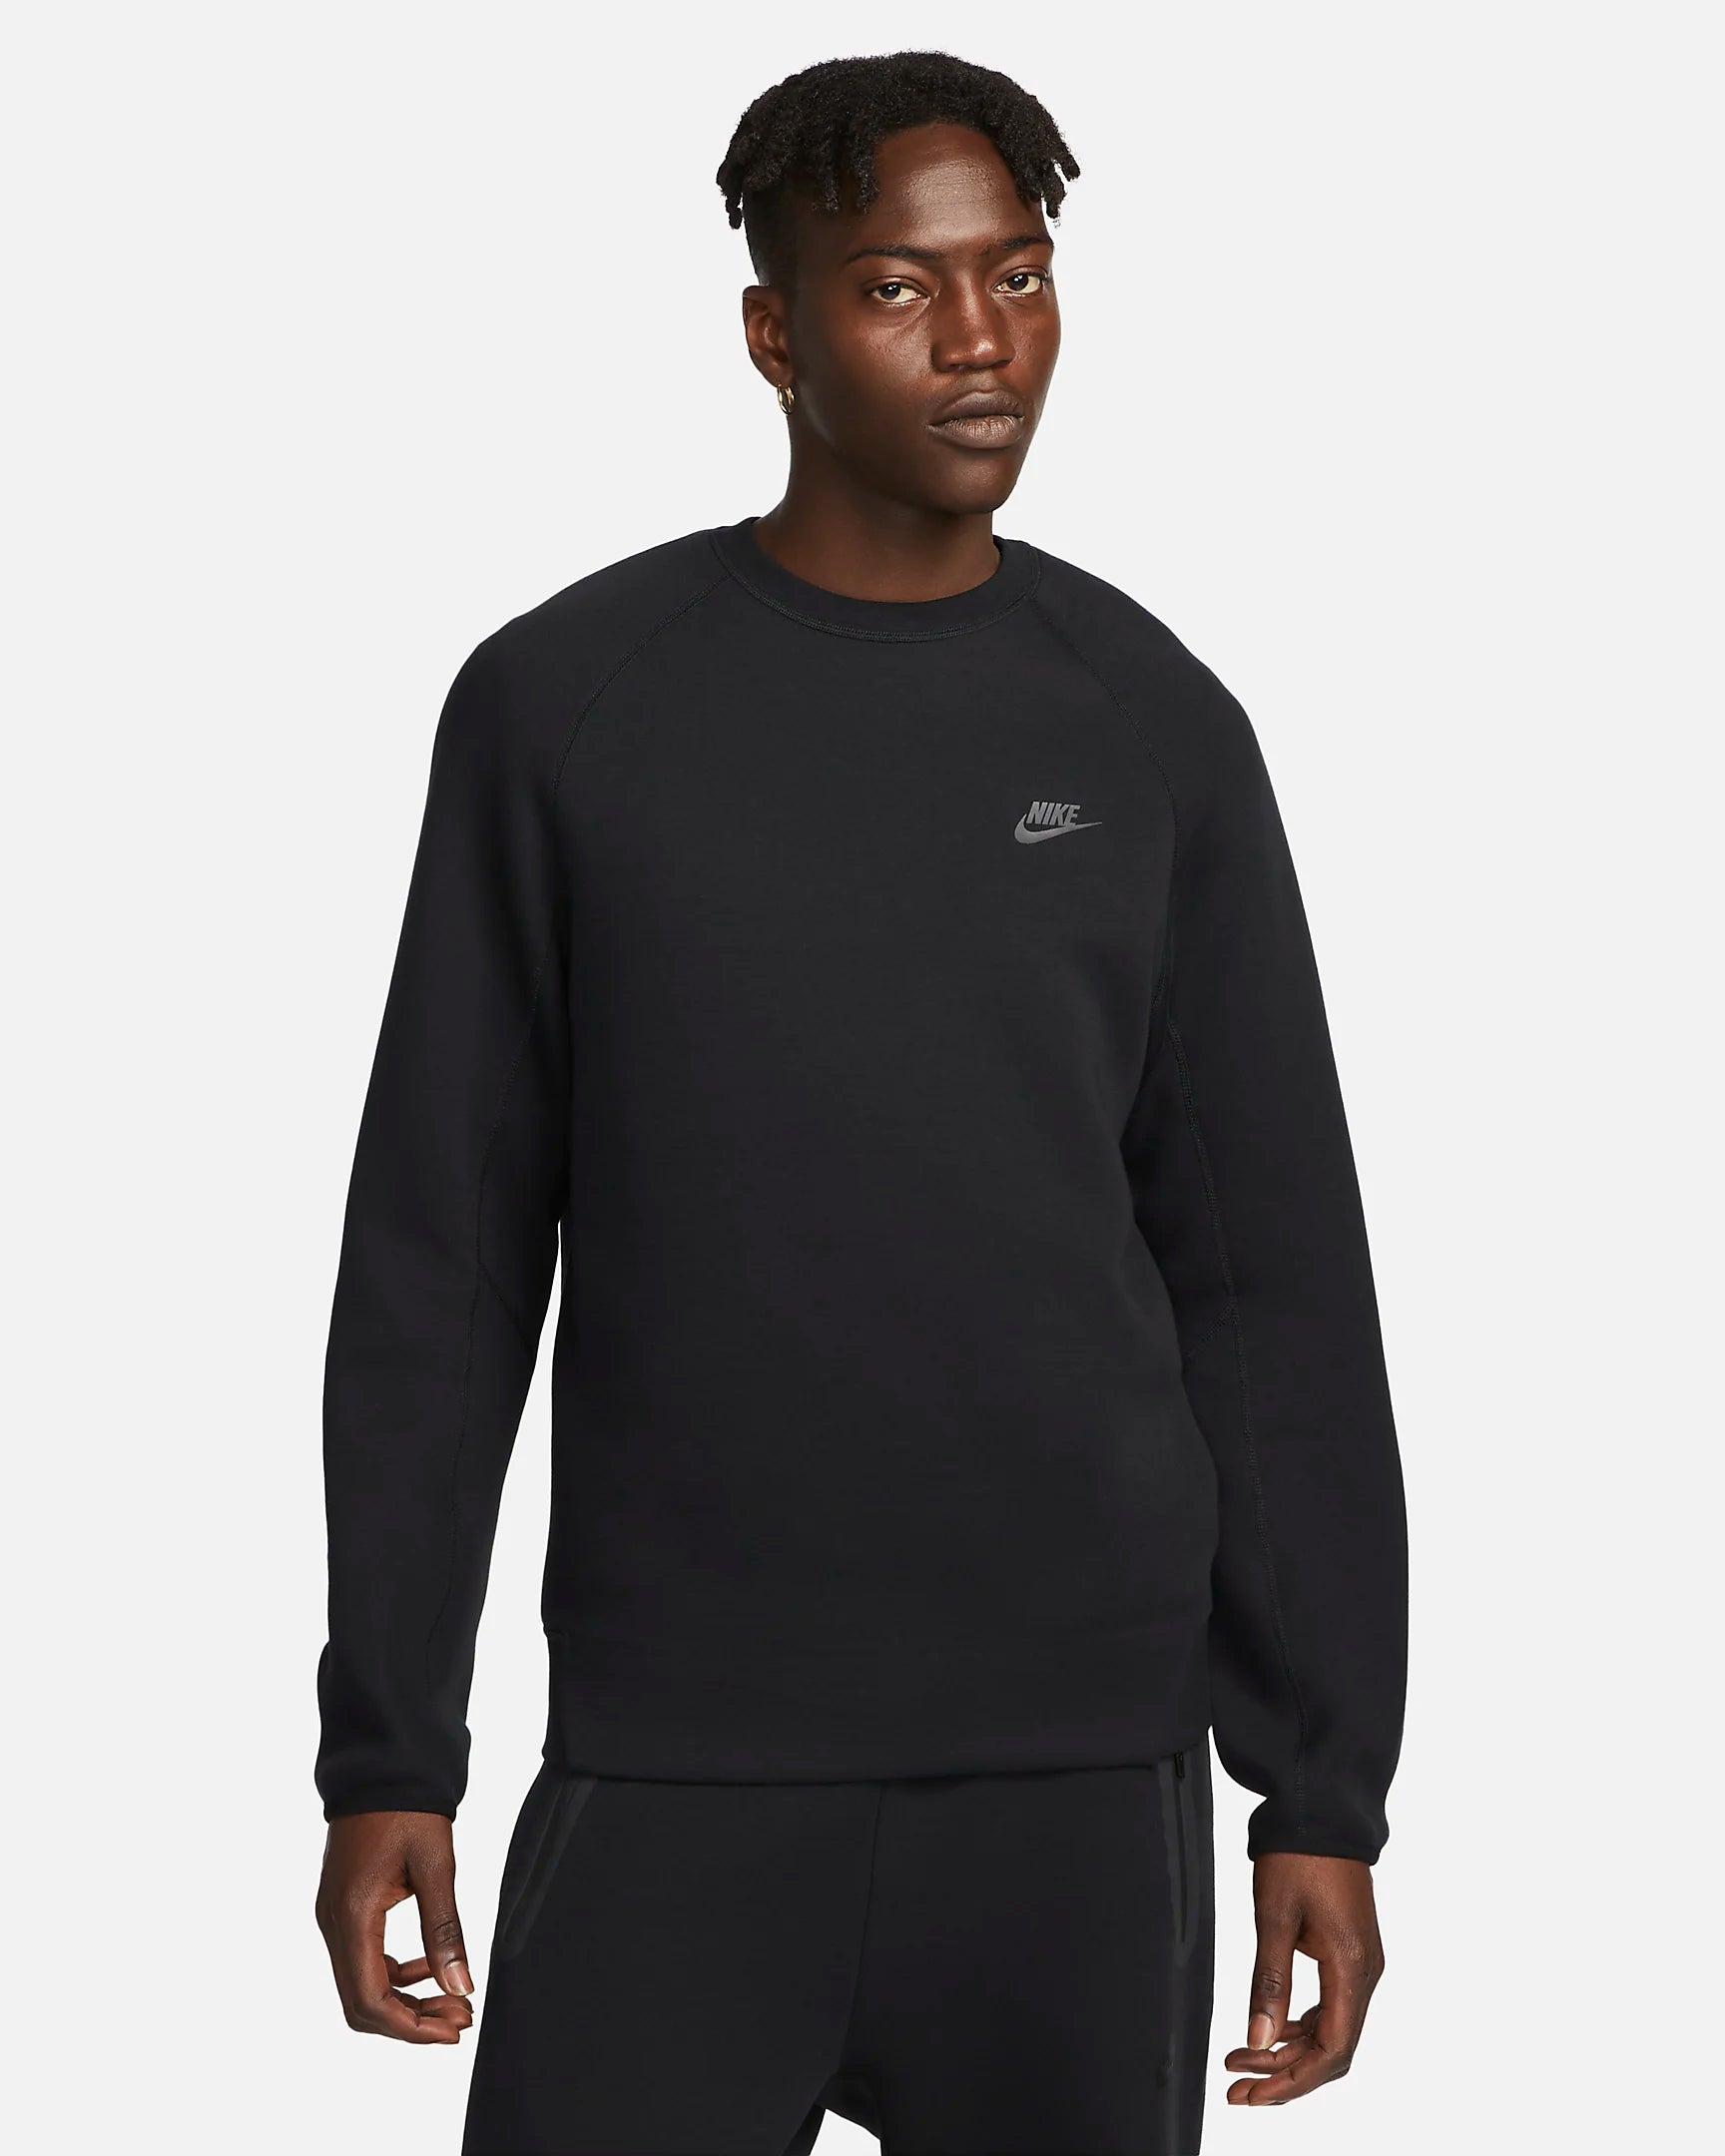 Sweat Nike Tech Fleece - Noir